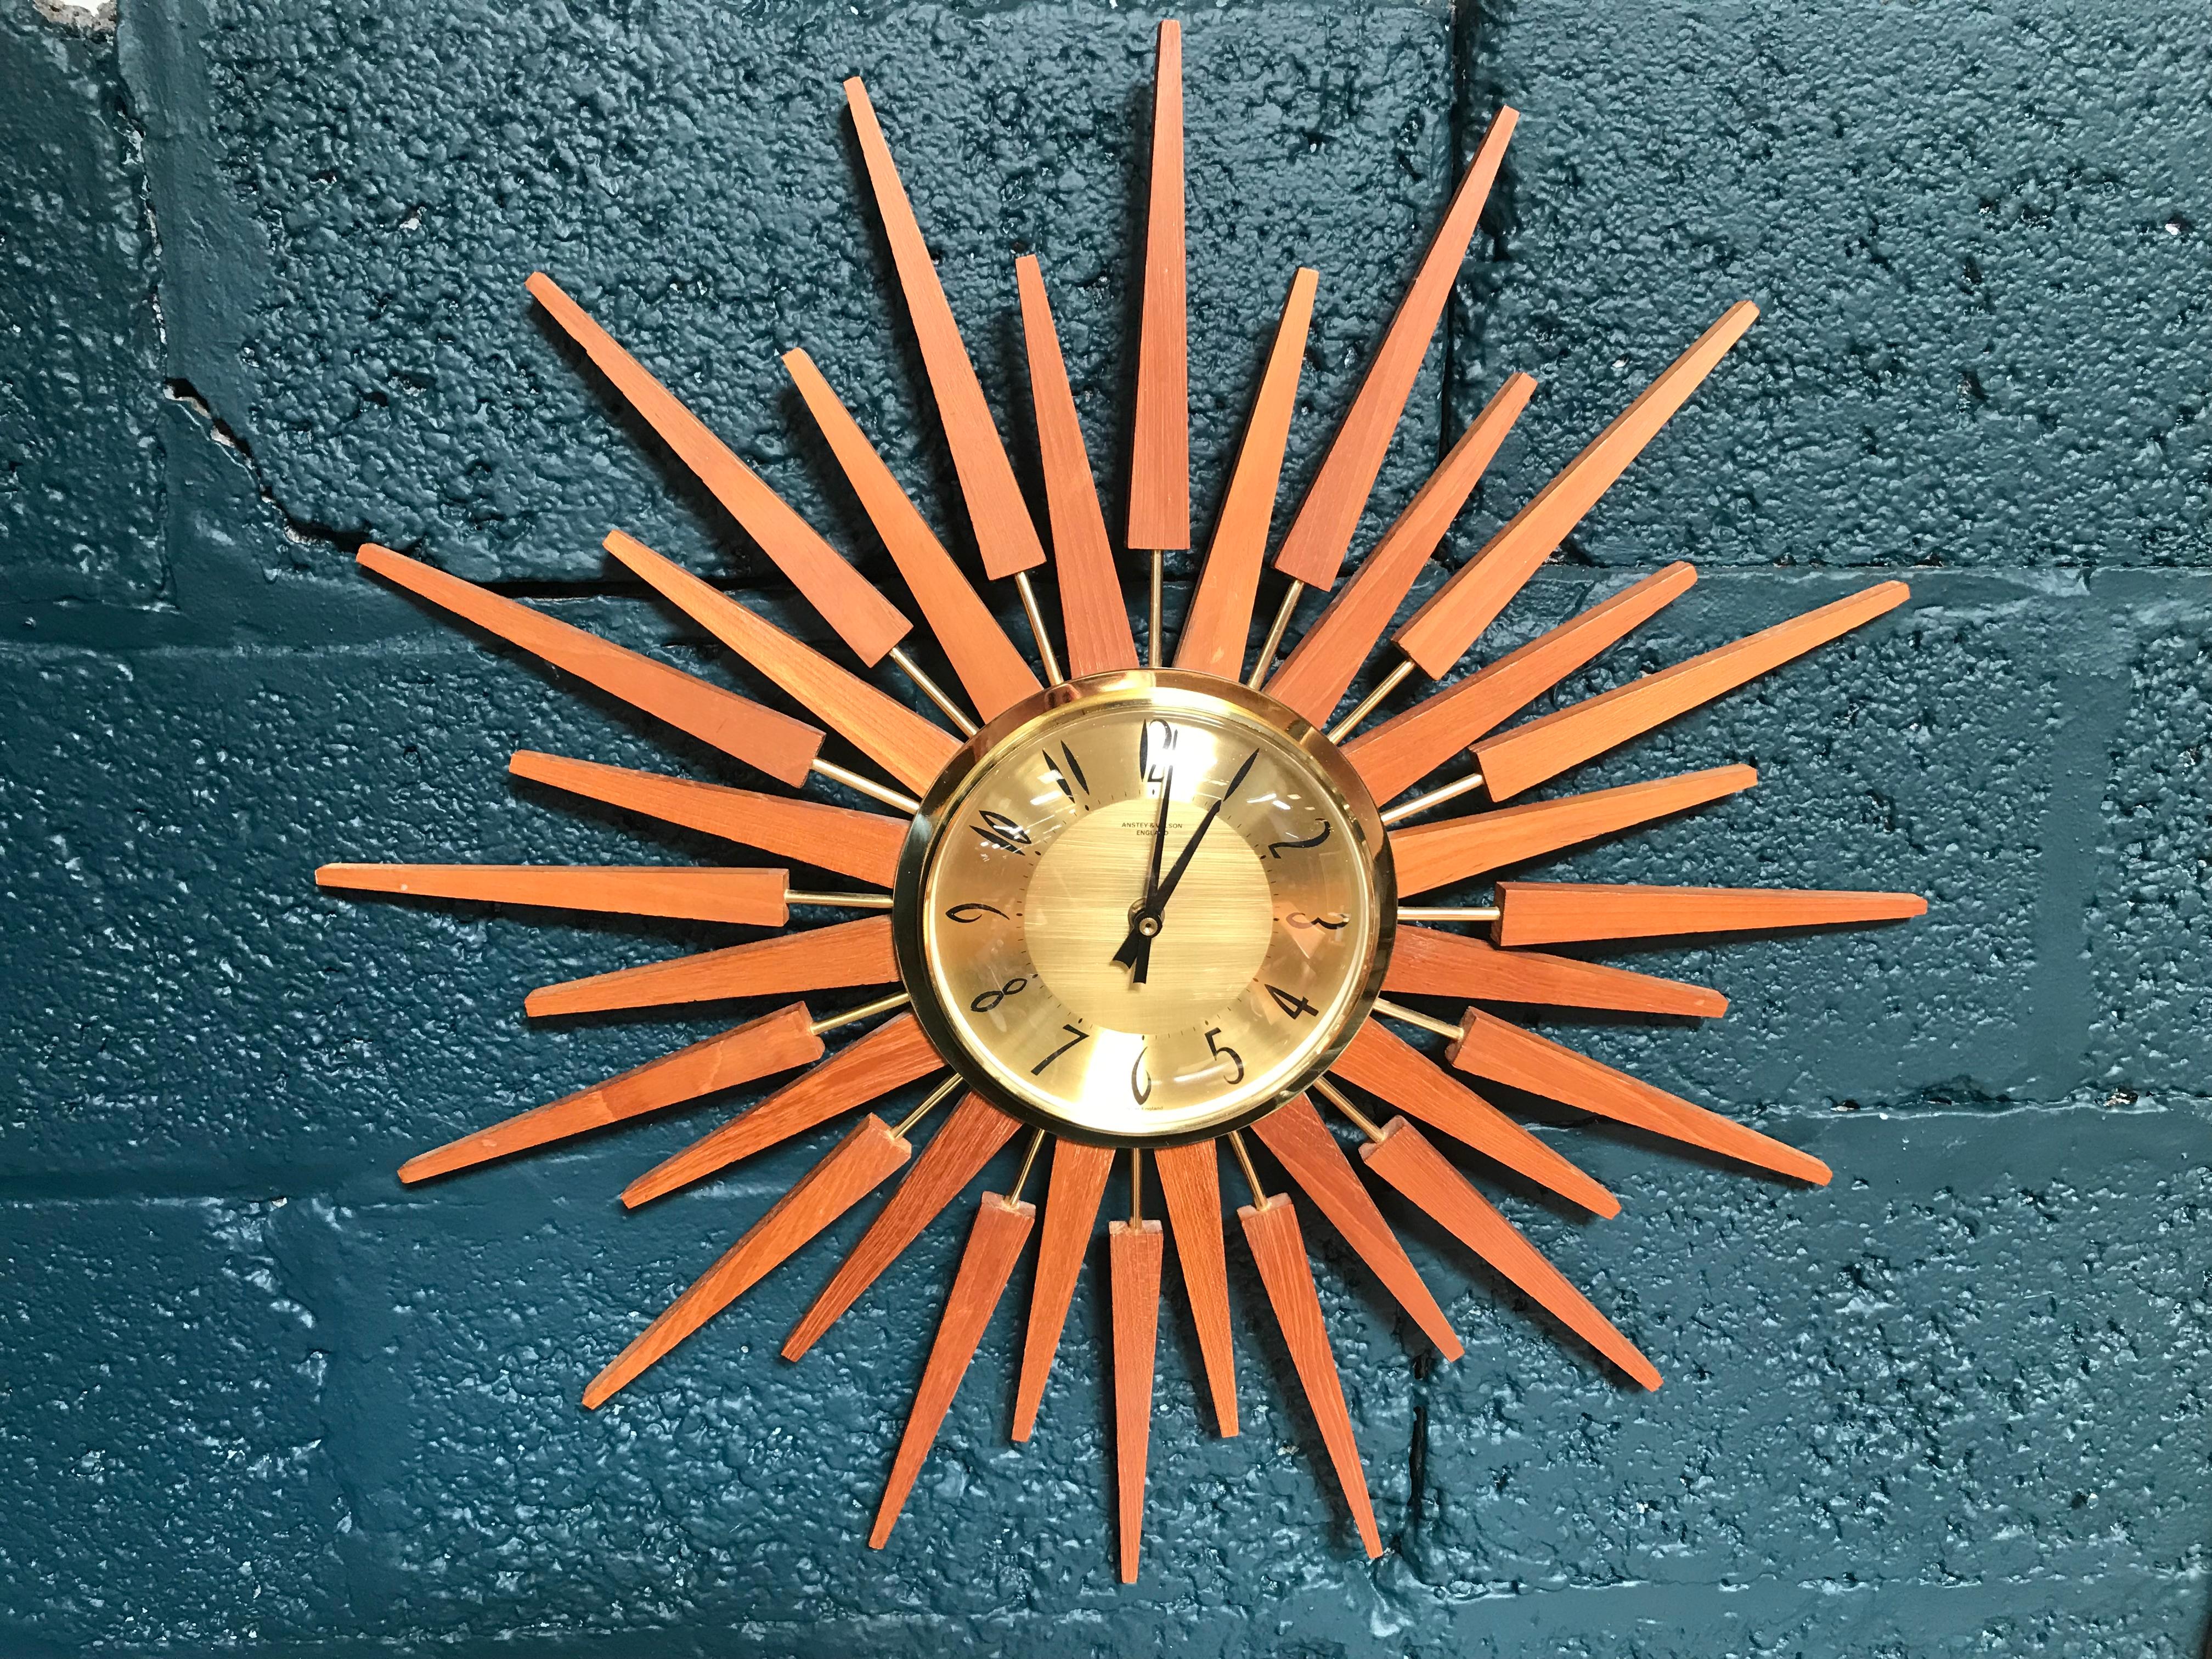 anstey and wilson sunburst clock